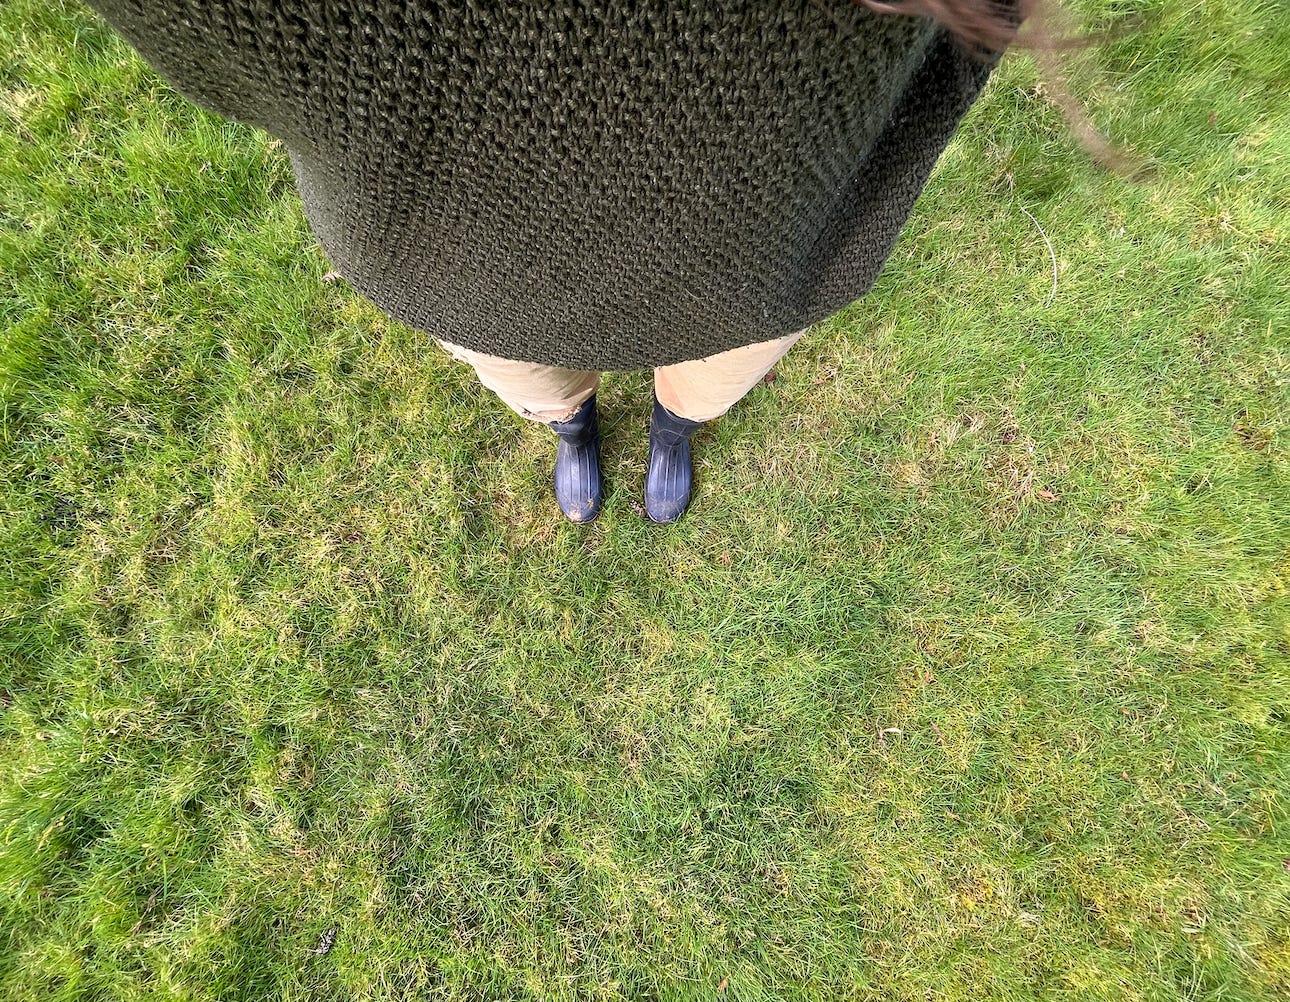 Grass lawn, rain boots, dark green wool sweater.